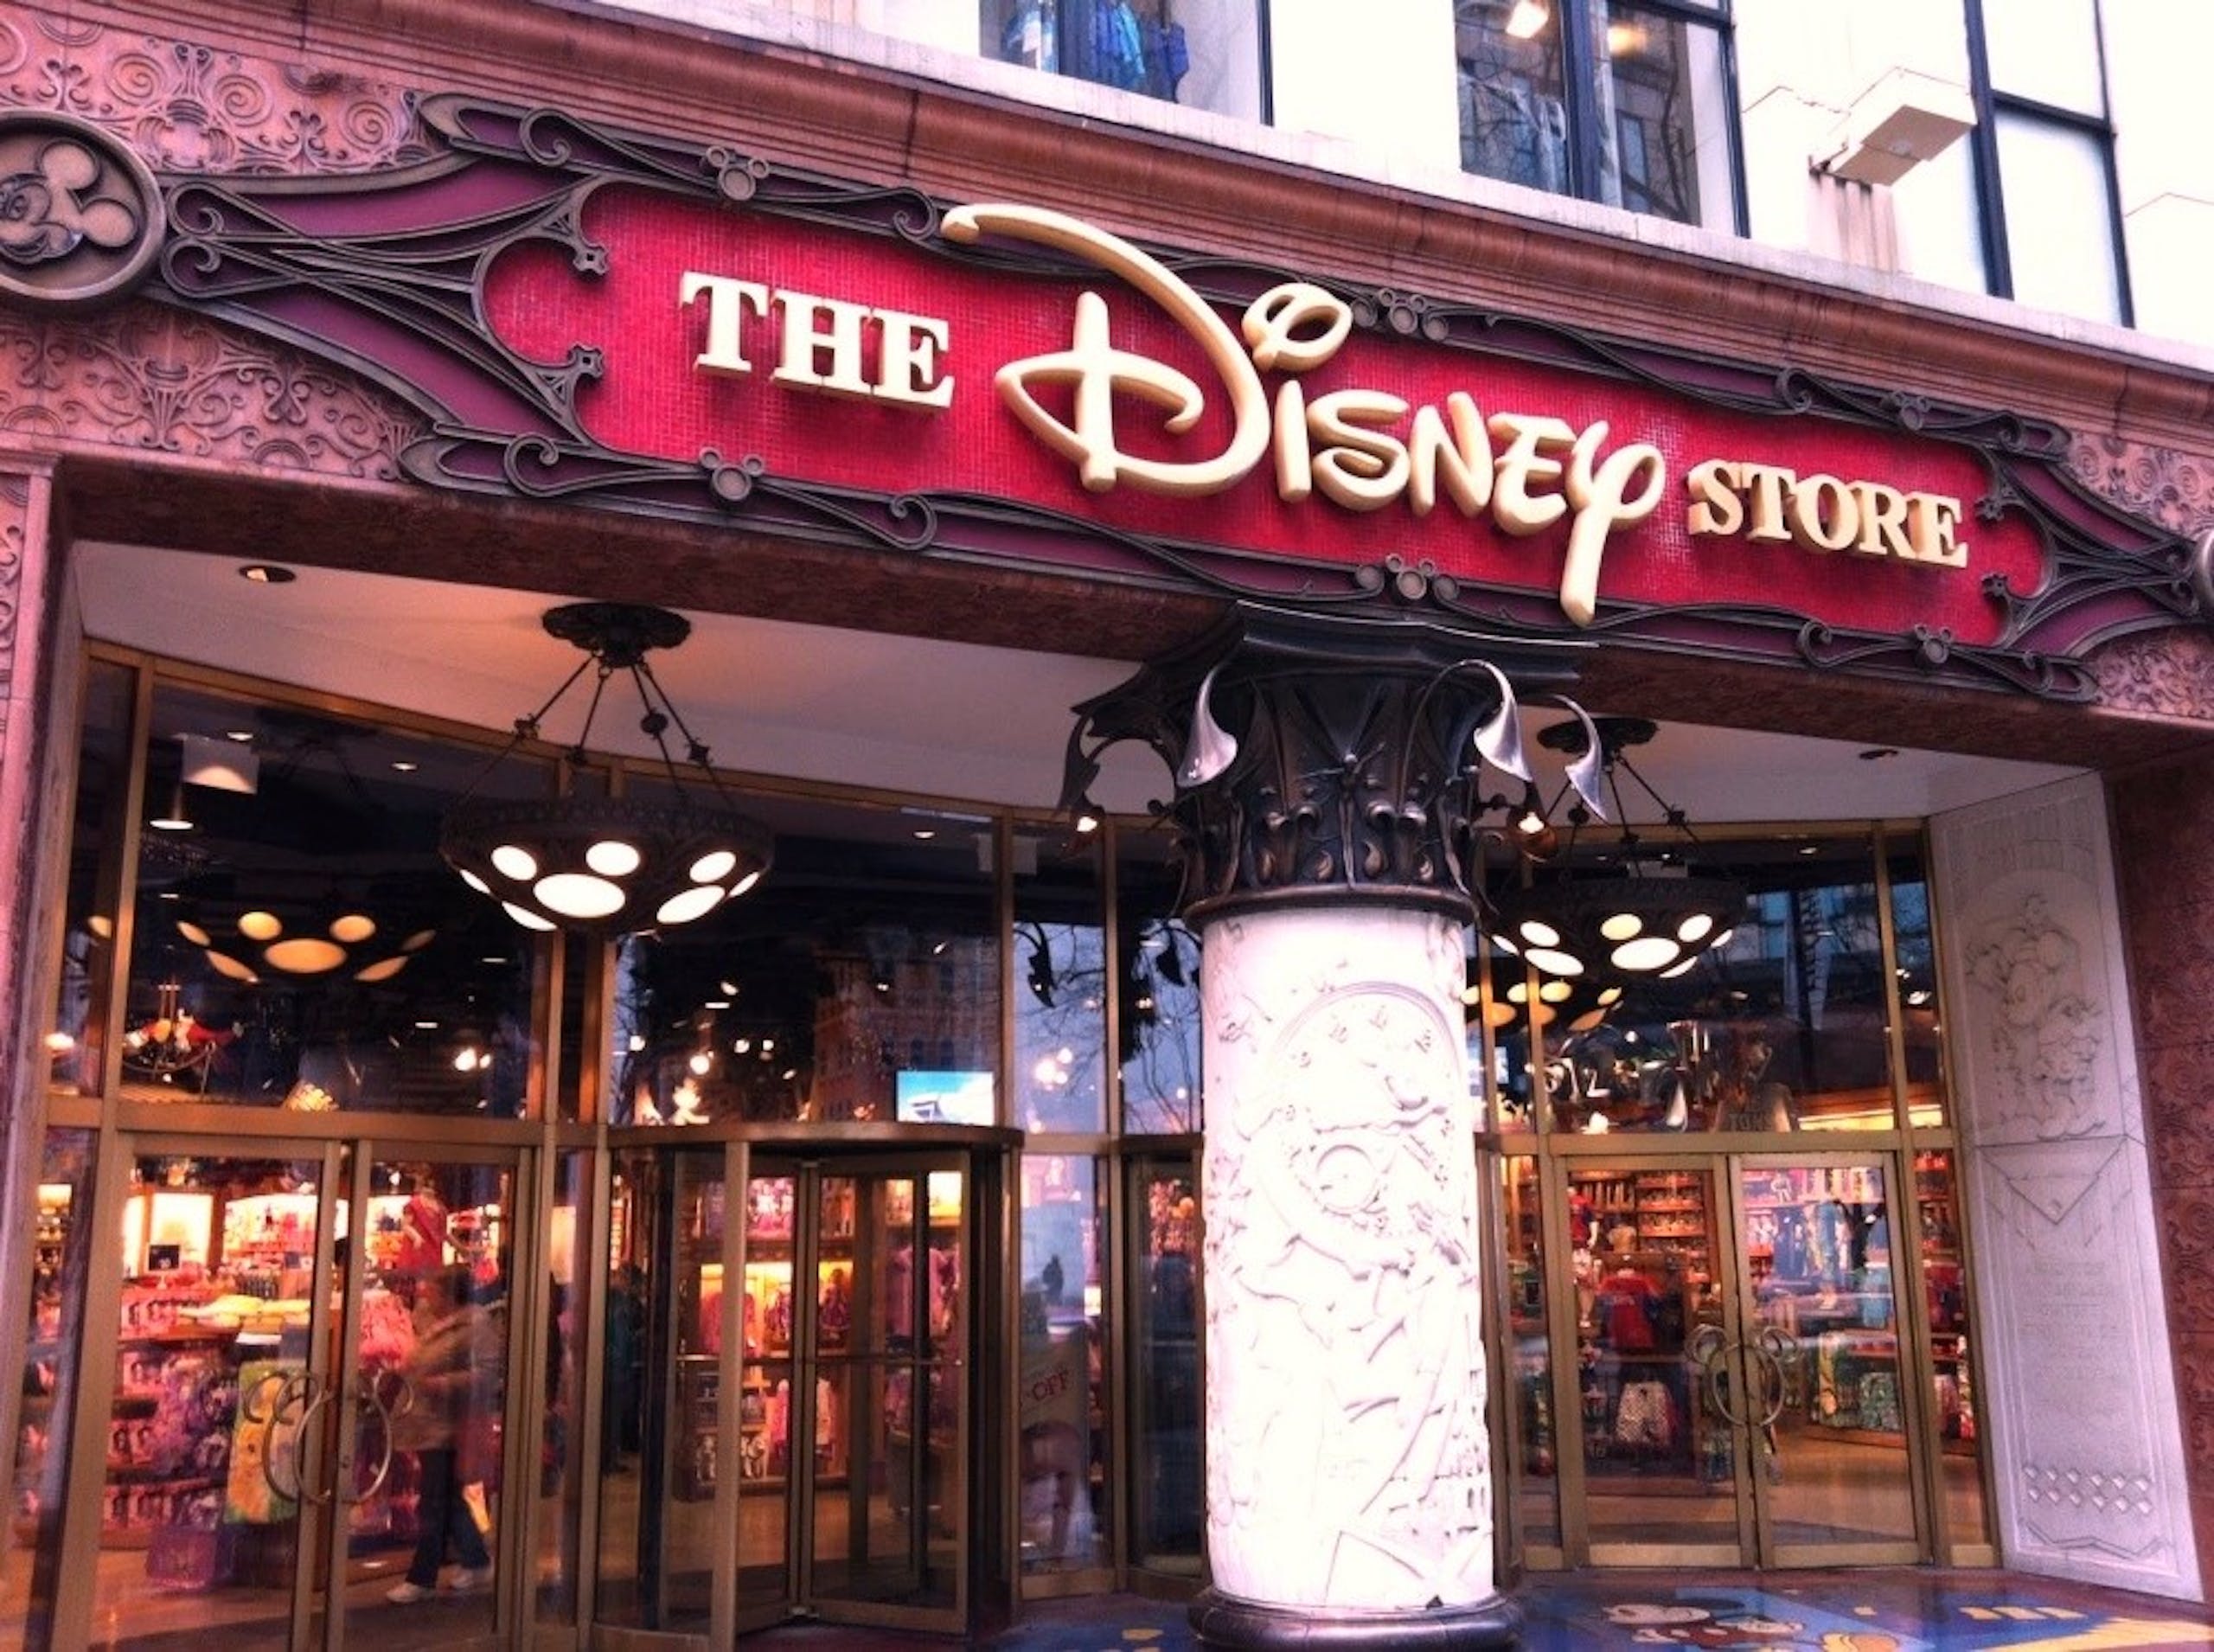 照片中提到了THE、DISNEY、STORE，跟華特迪士尼世界有關，包含了芝加哥迪士尼商店、shop迪士尼、沃爾特迪斯尼公司、玩具店、迪士尼商店